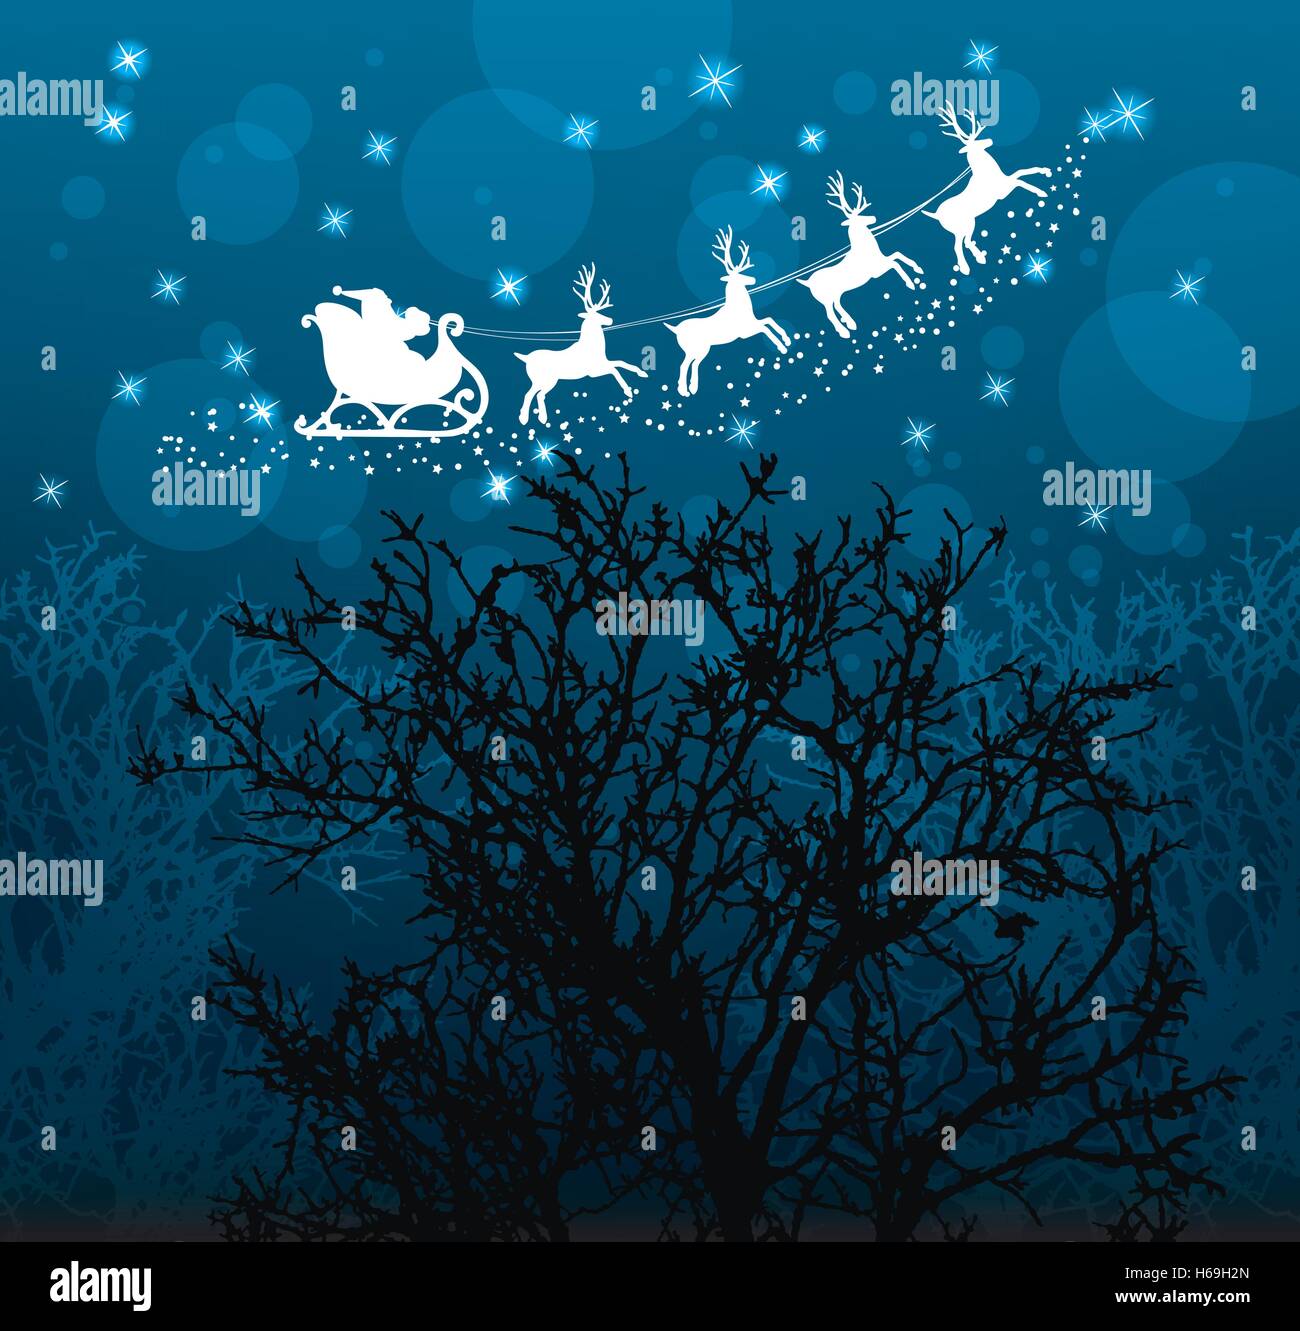 Vektor Weihnachten Urlaub Hintergrund mit Santa Claus, Rentiere, Sterne und Bäume Stock Vektor